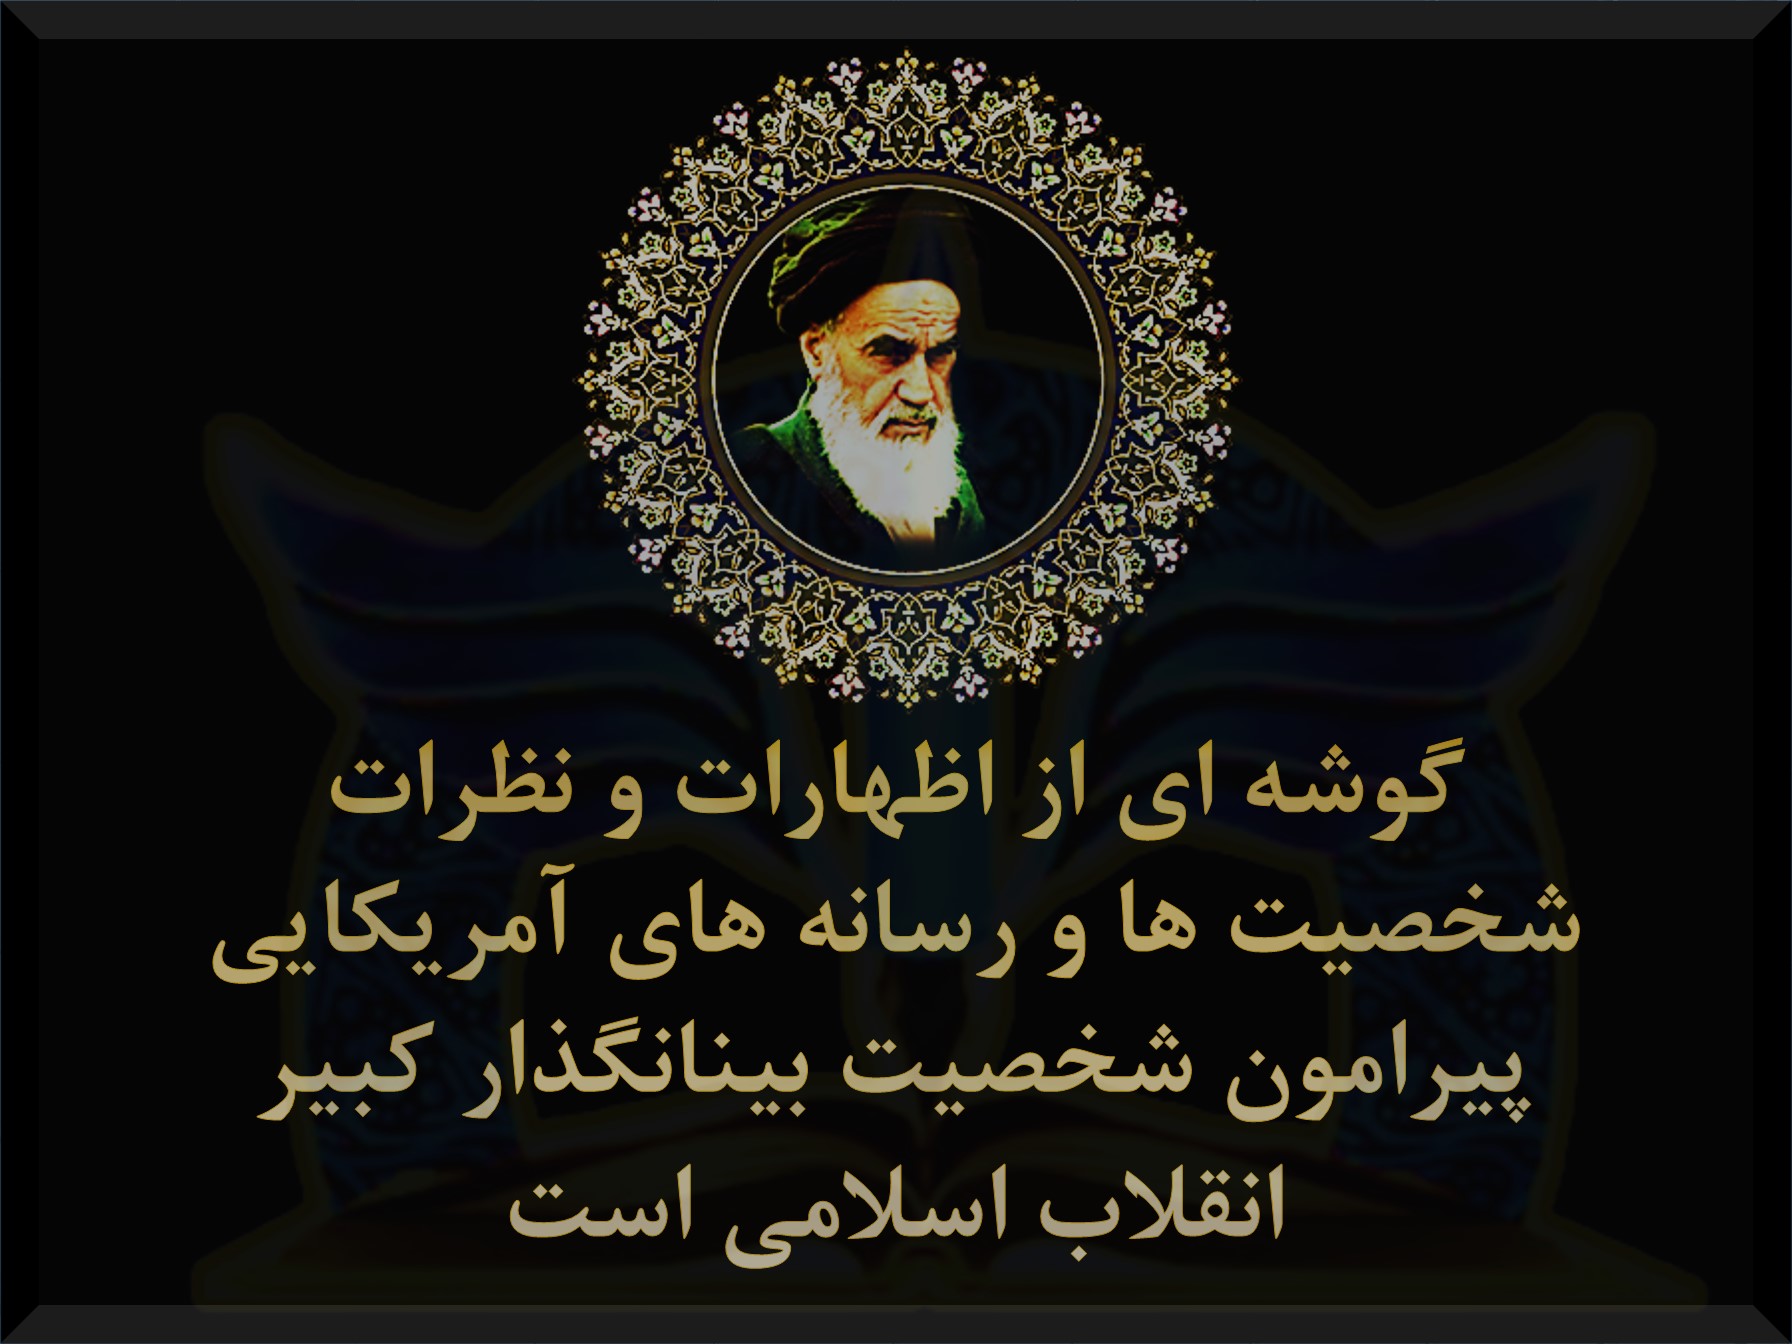 آمریکایی ها درباره امام خمینی ره چه میگویند ؟